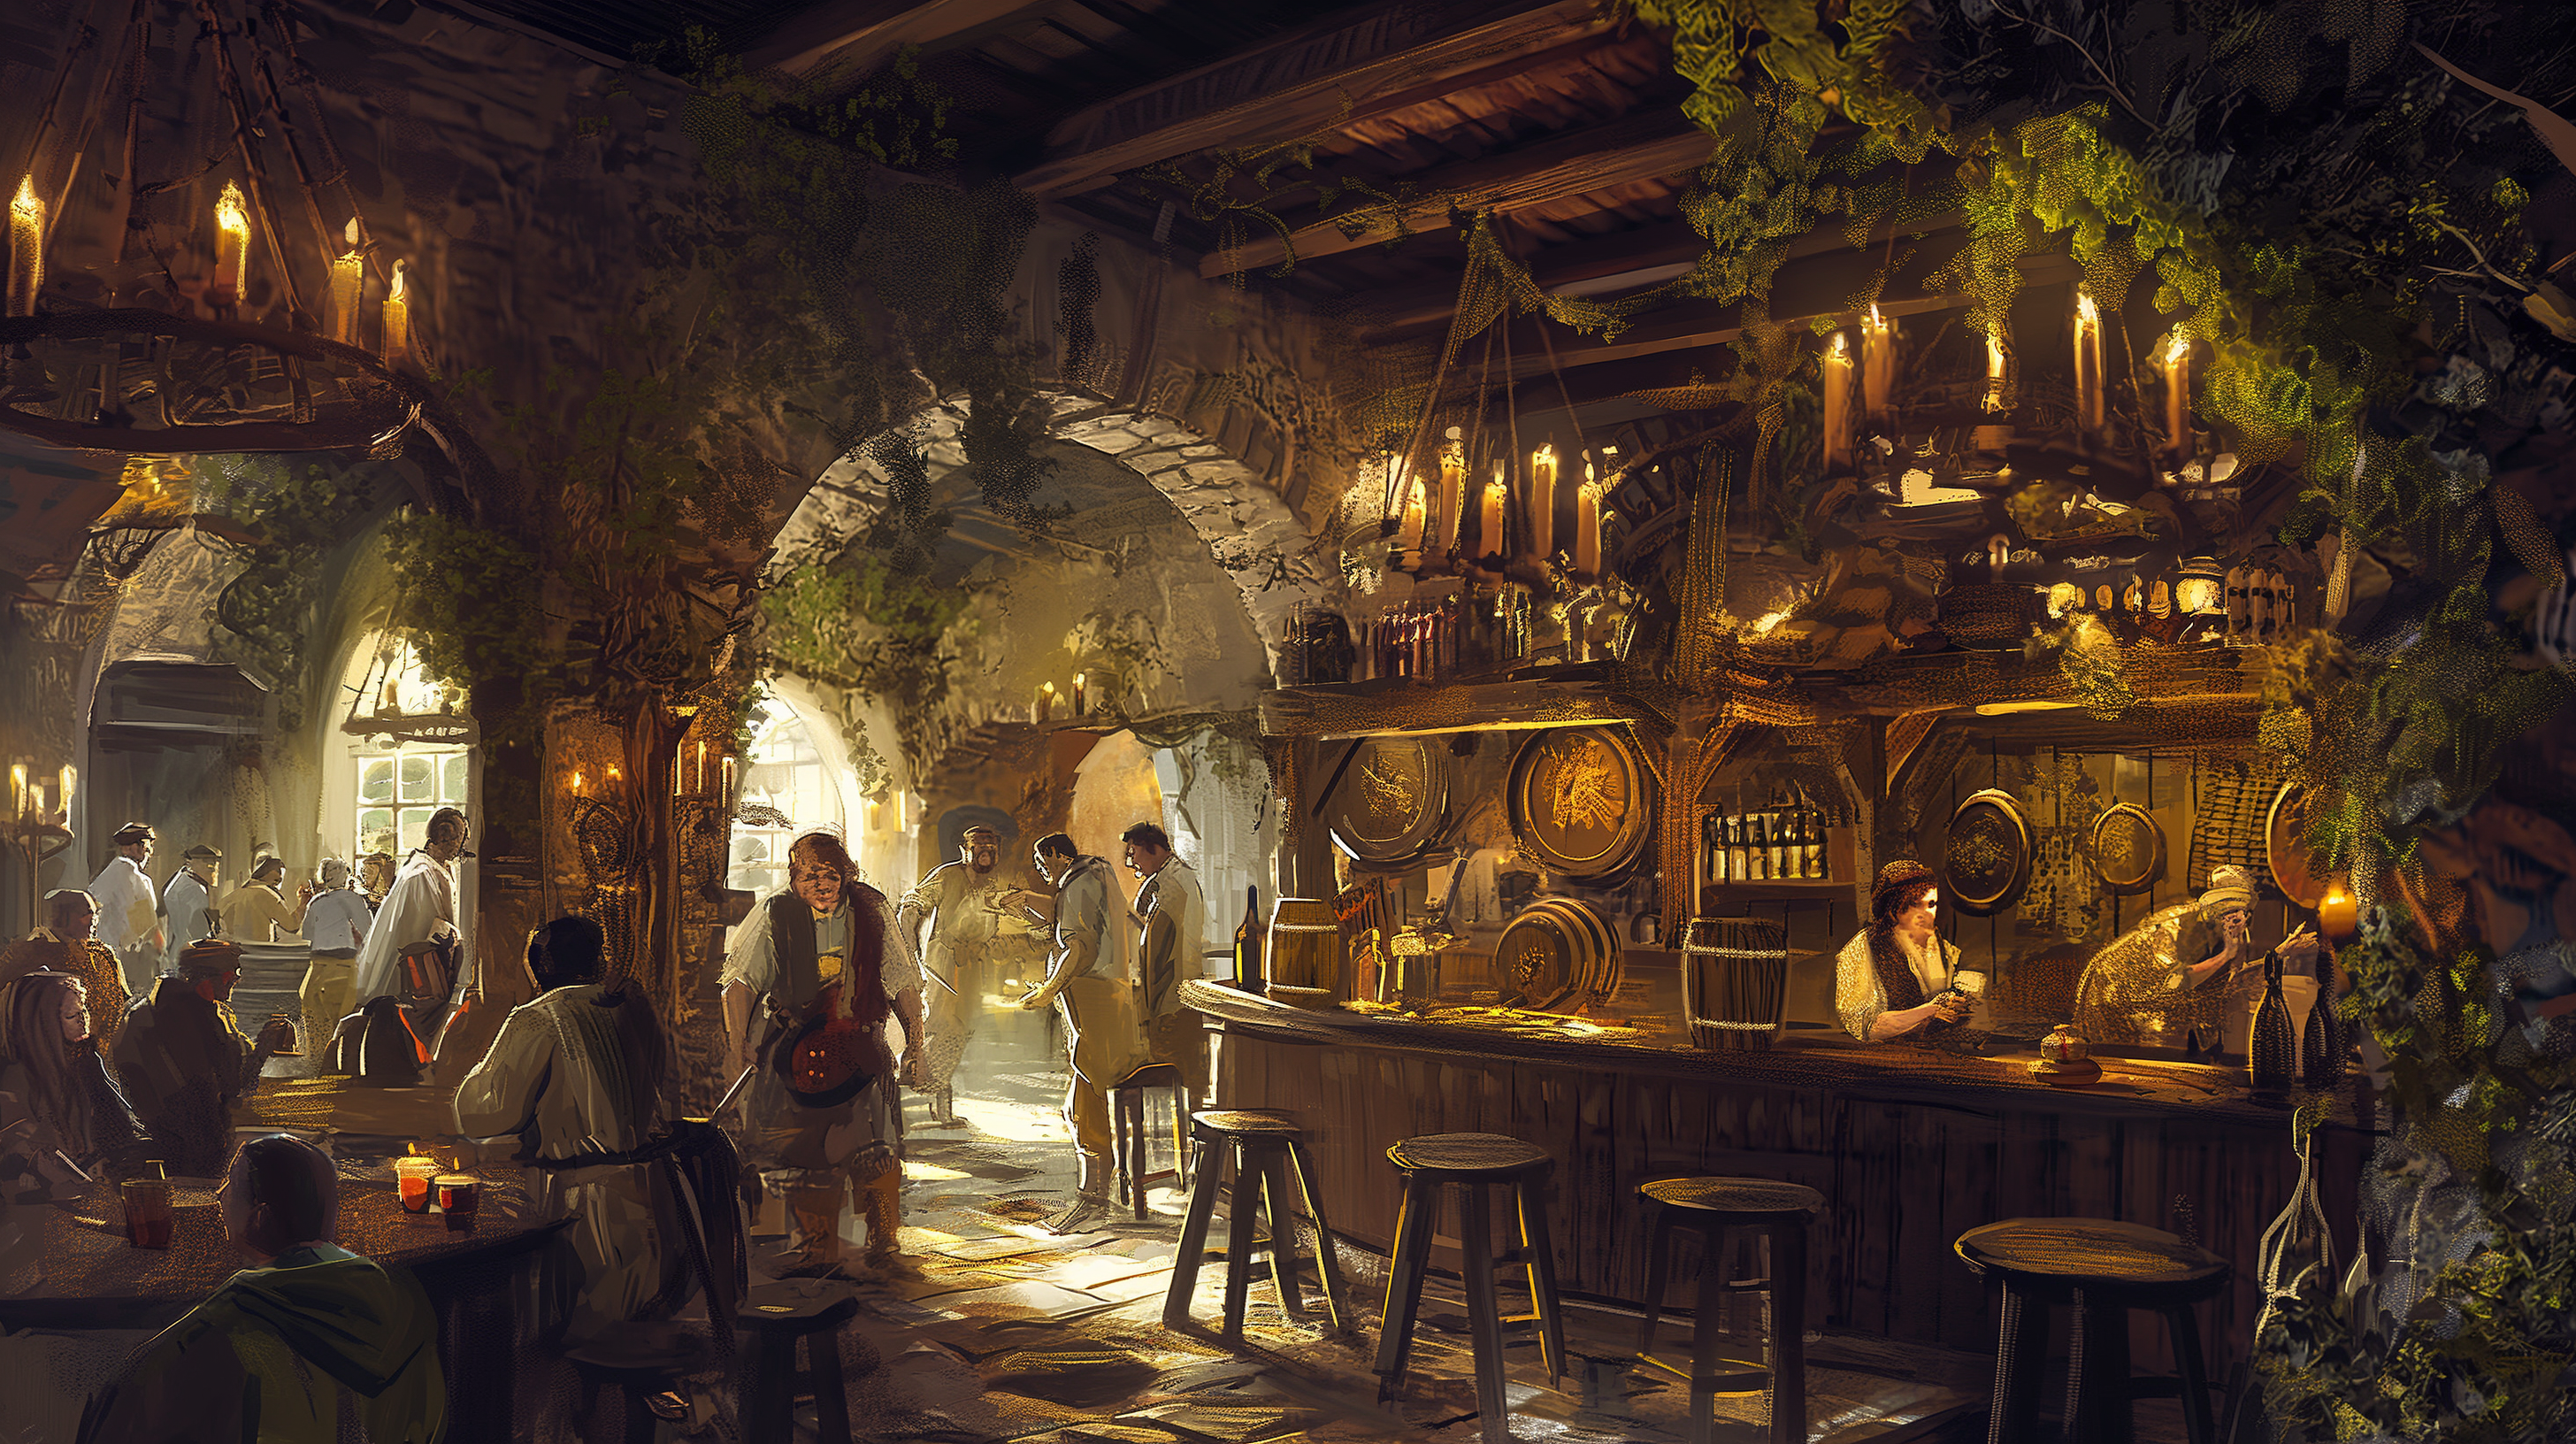 Das Bild zeigt eine lebhafte mittelalterliche Taverne, die von Kerzenlicht beleuchtet wird. Die Gäste genießen ihre Zeit, ein Barkeeper serviert Getränke, und das rustikale Interieur ist mit Holzfässern und Grünzeug geschmückt.